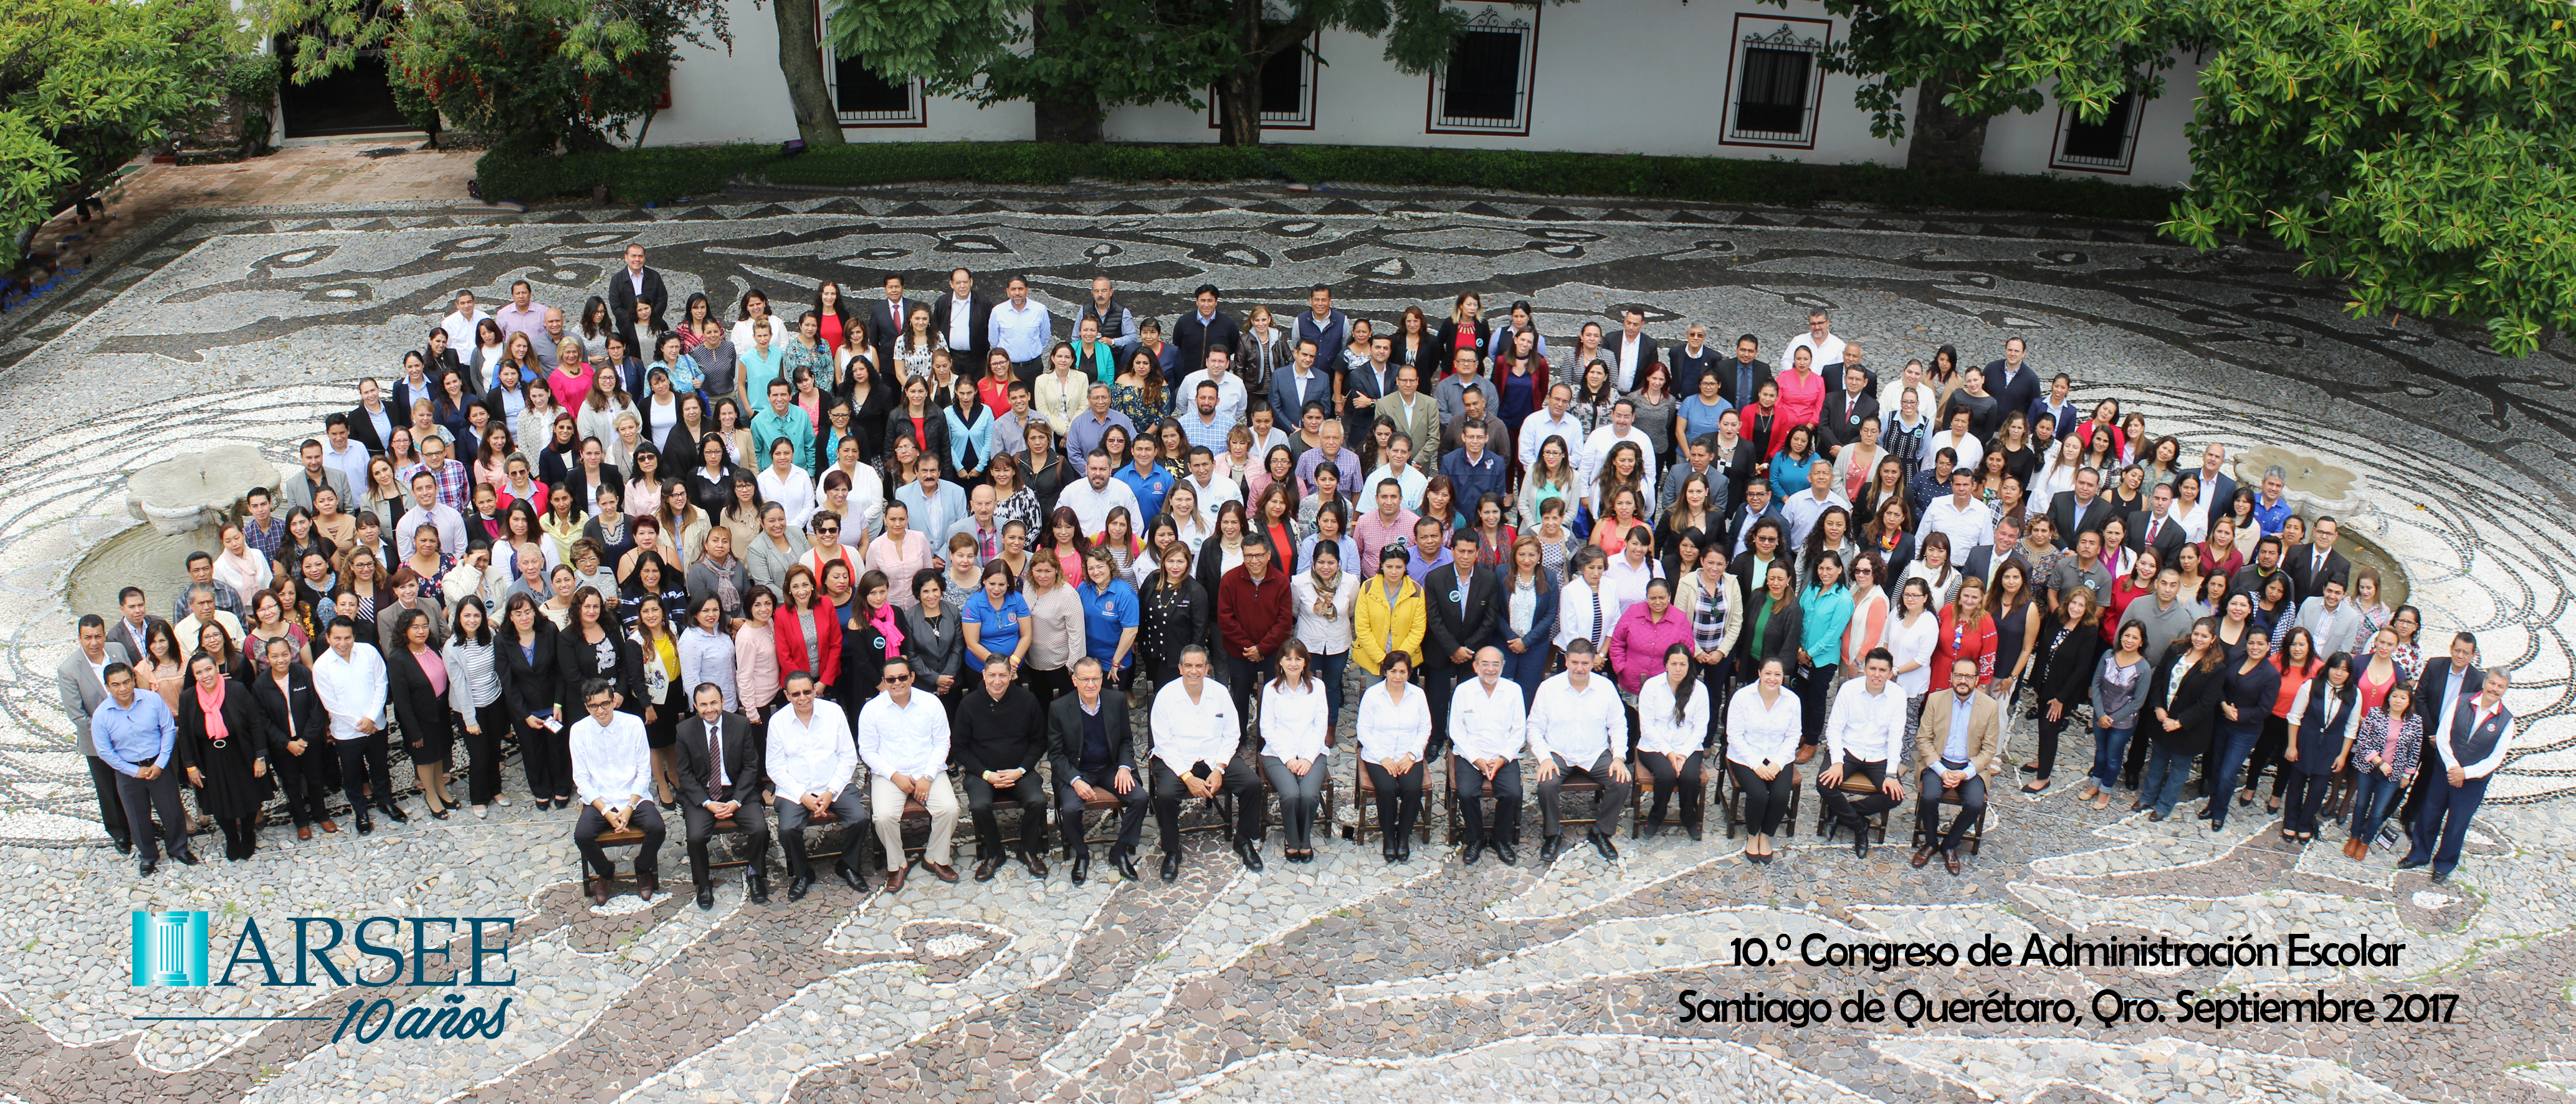 Group photo, from 2017, of the "Santiago de Querétaro" school administration.